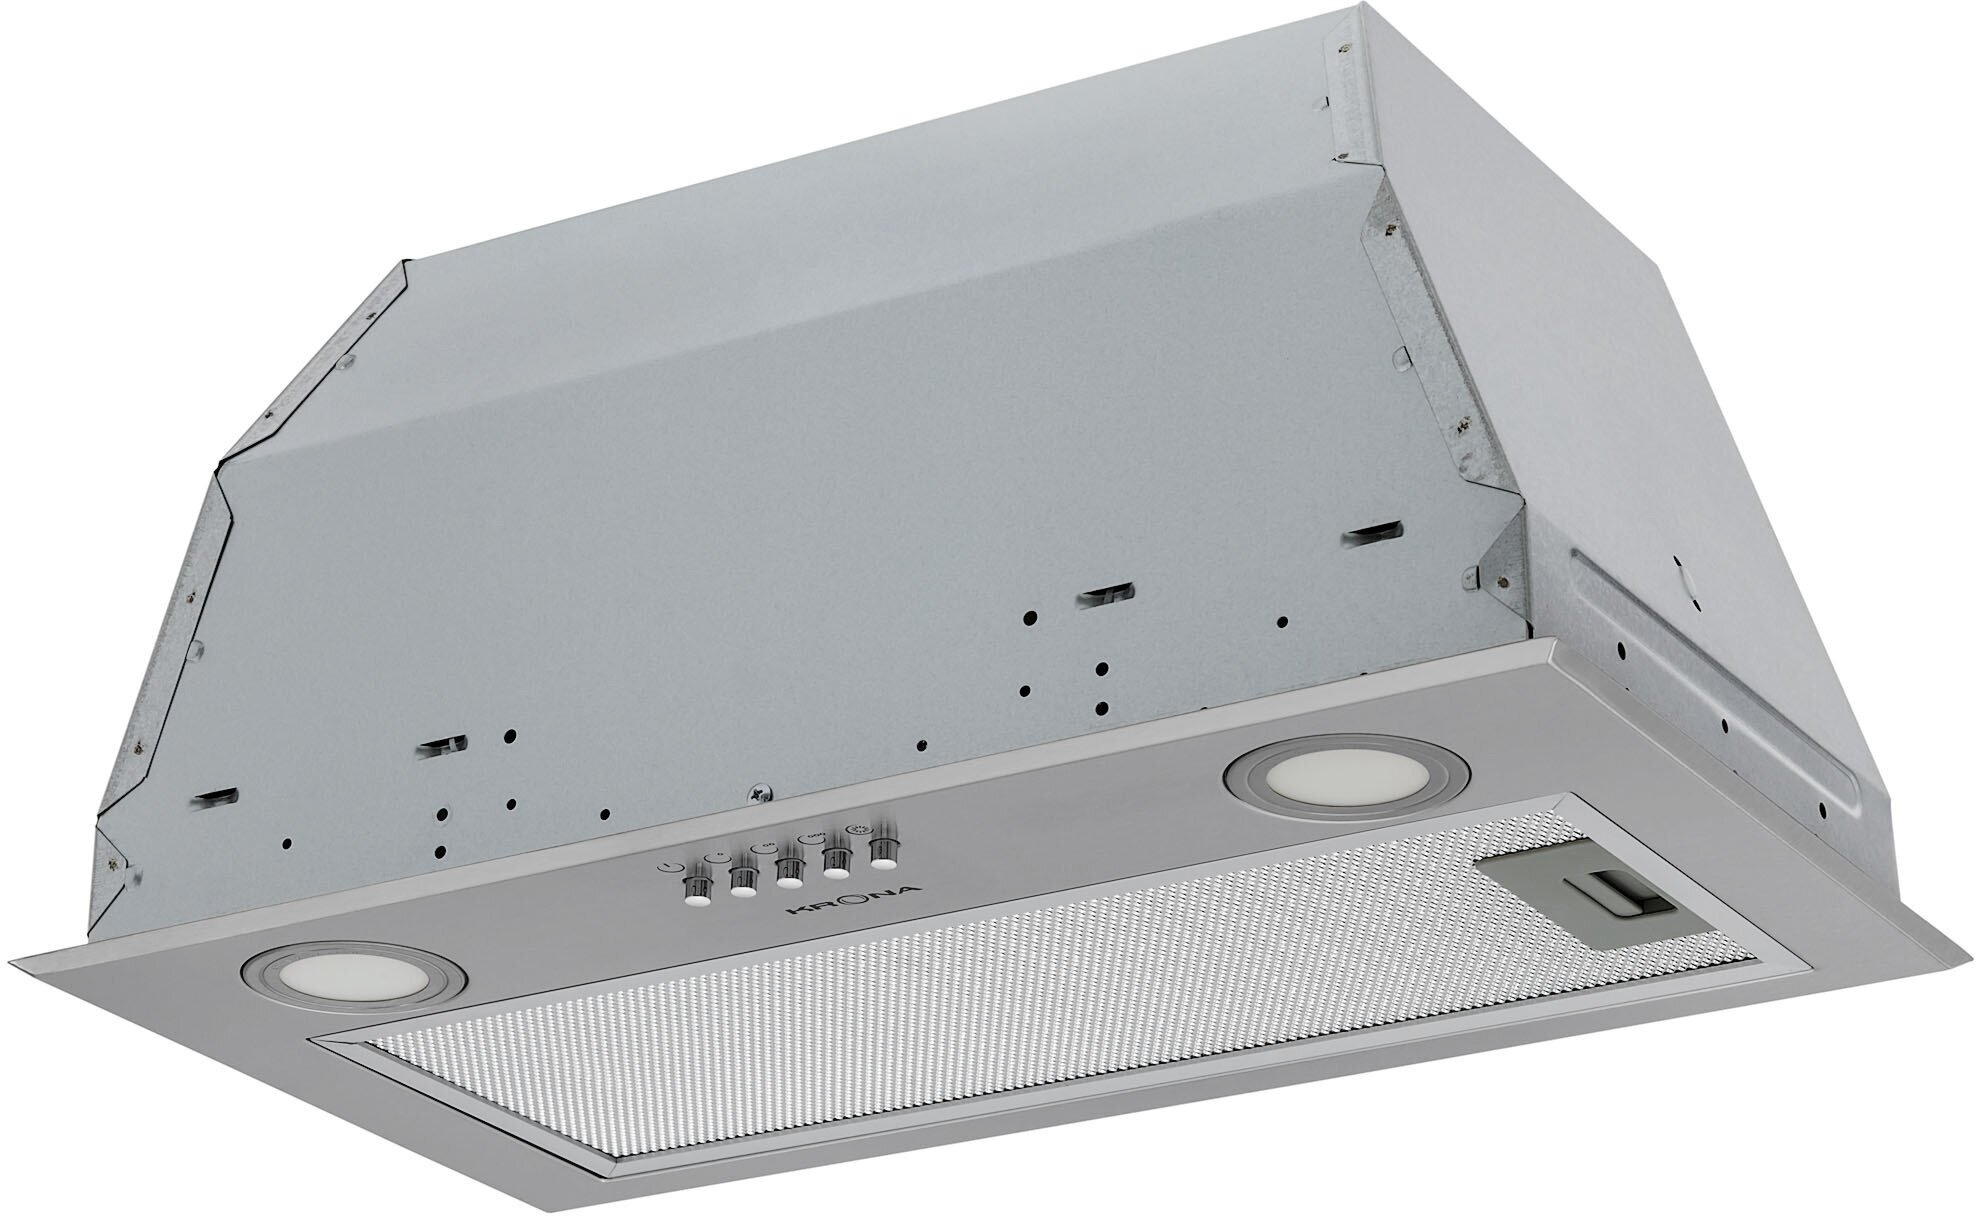 Вытяжка встраиваемая в подвесной шкаф Krona / Крона ADEL 600 INOX PB металл серый 2 режима 3 скорости 50Дб 600м3/ч / вытяжная система вентиляции